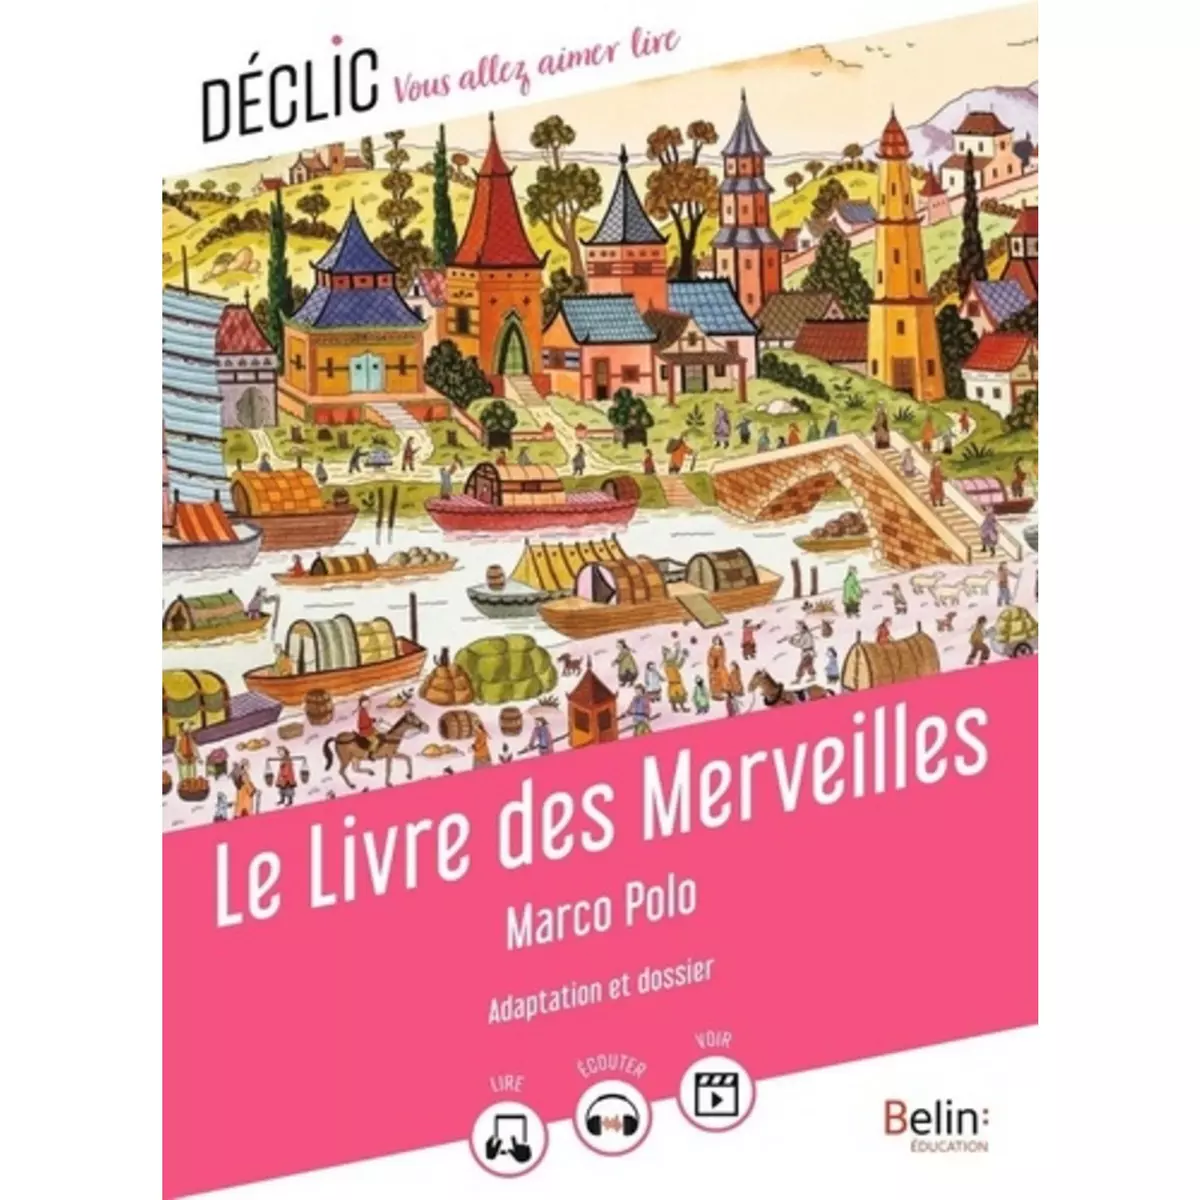  LE LIVRE DES MERVEILLES, Marco Polo